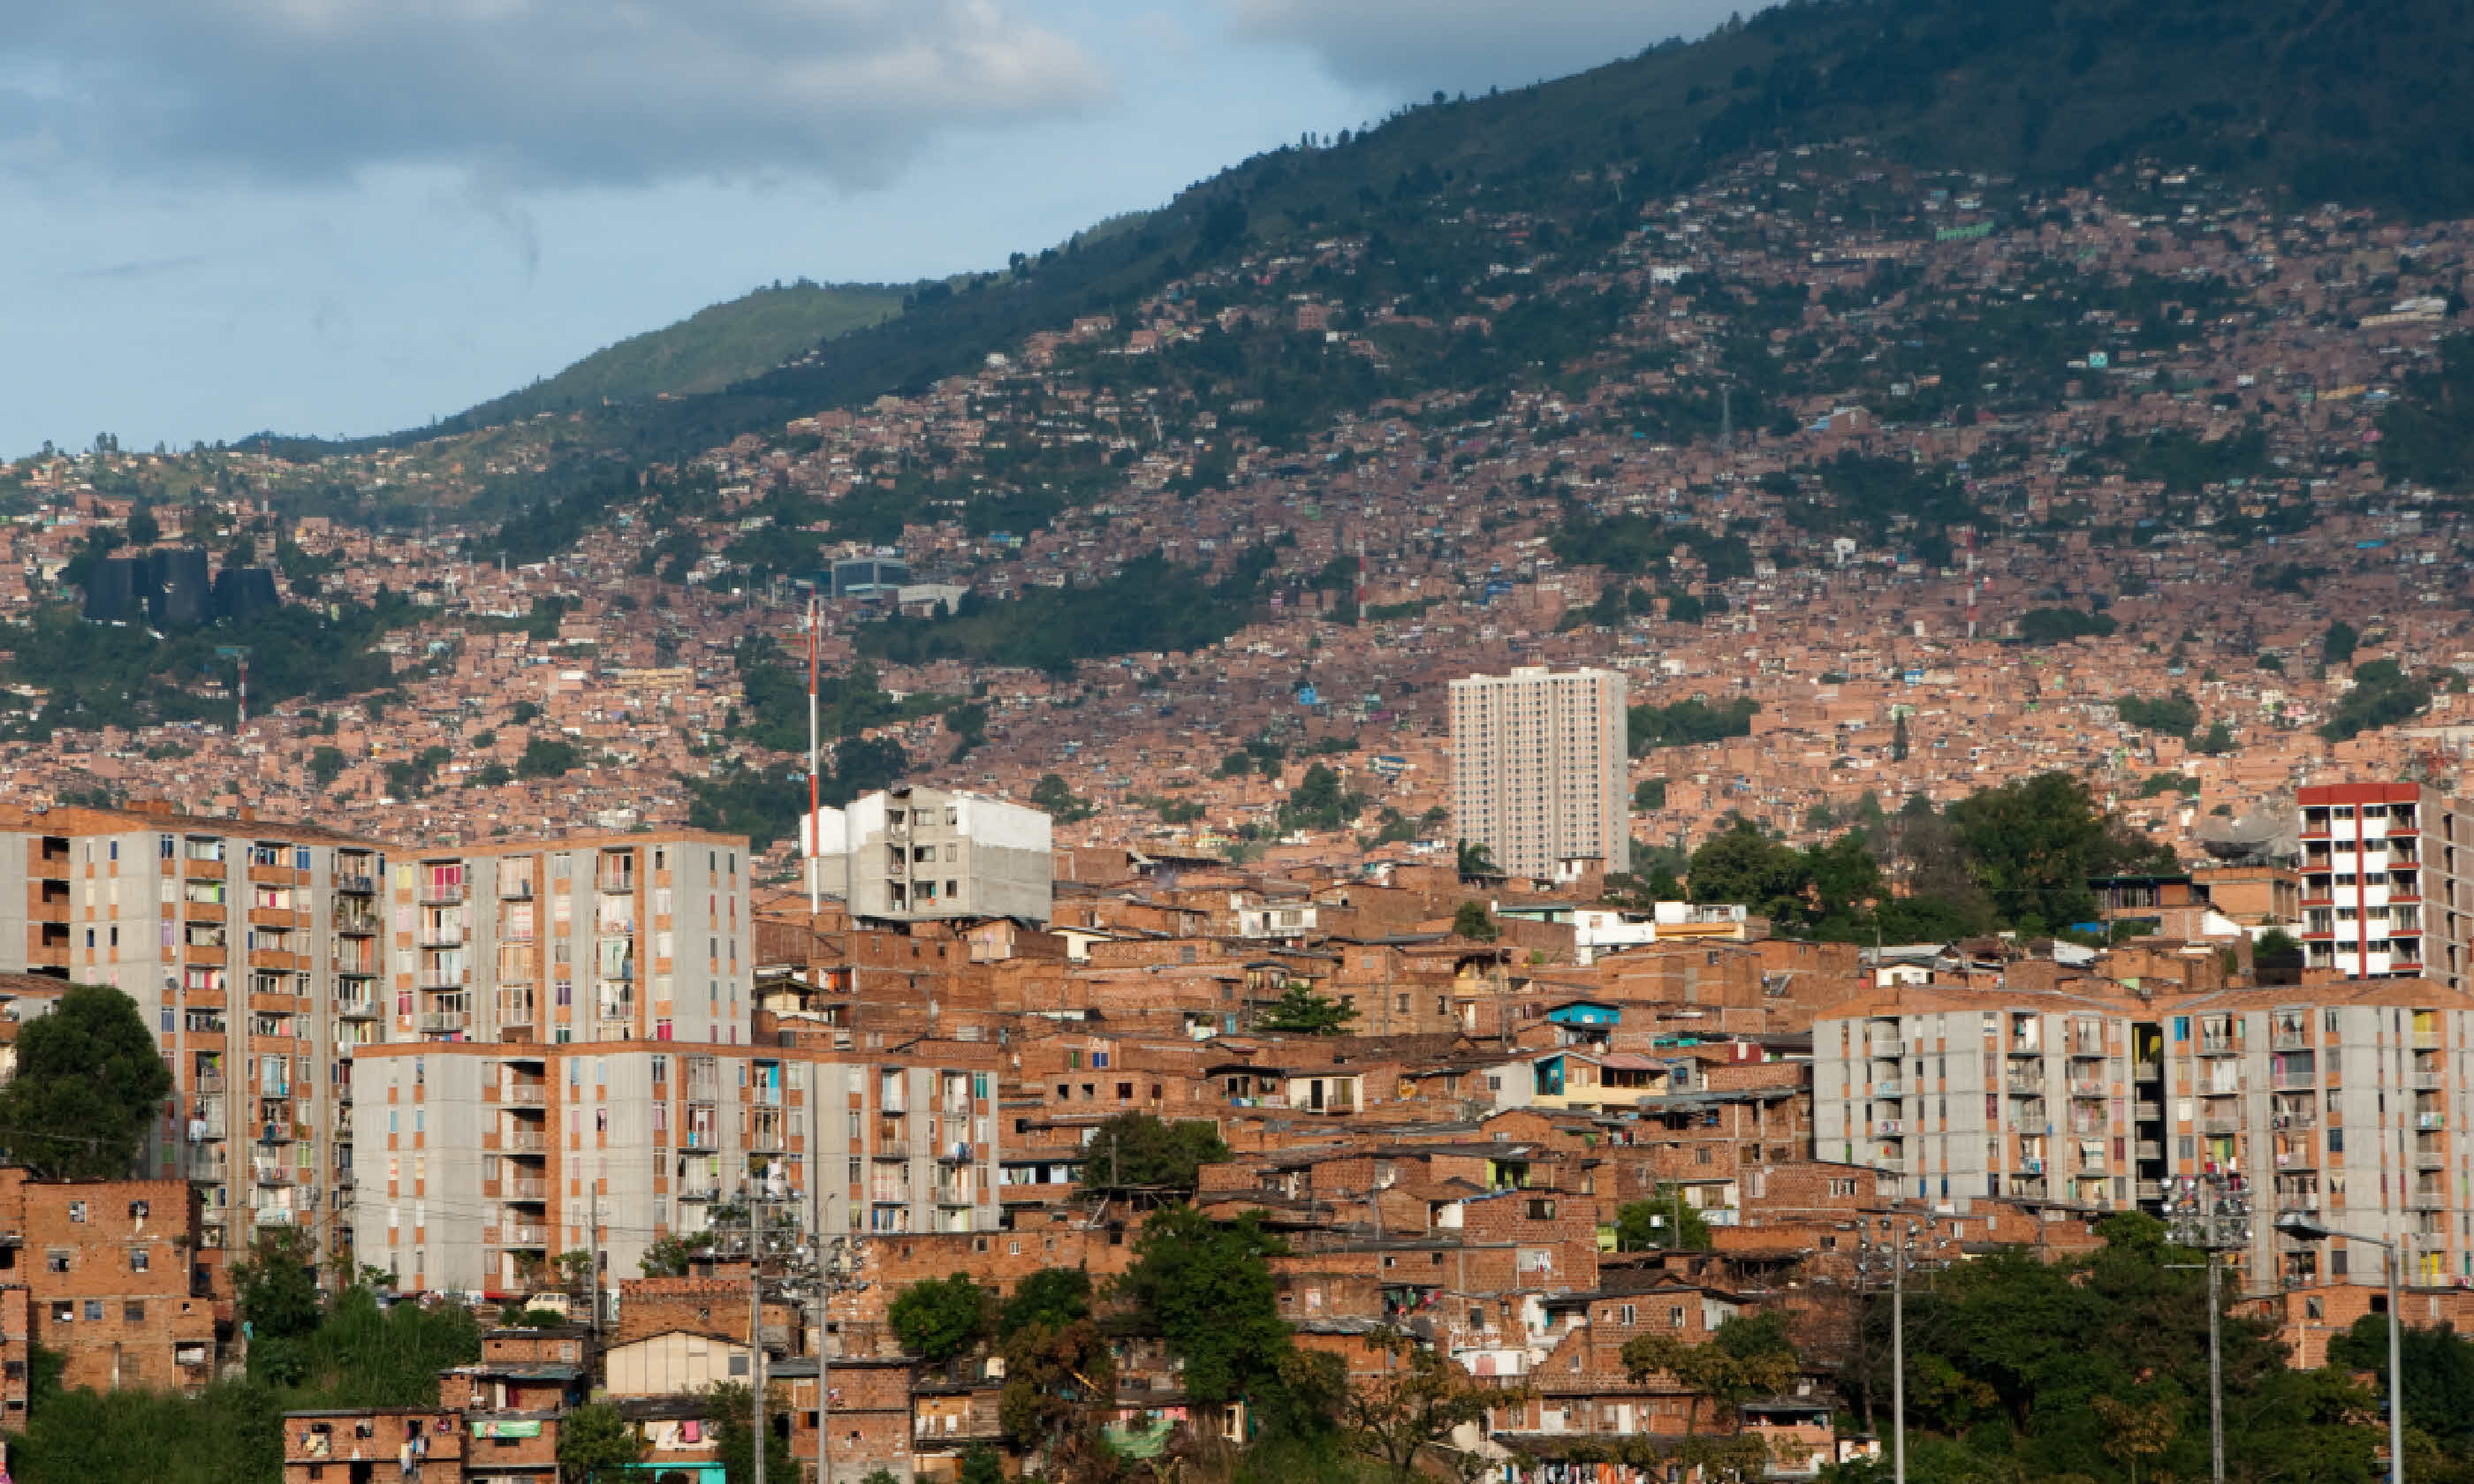 Cityscape of Medellin (Shutterstock: see credit below)